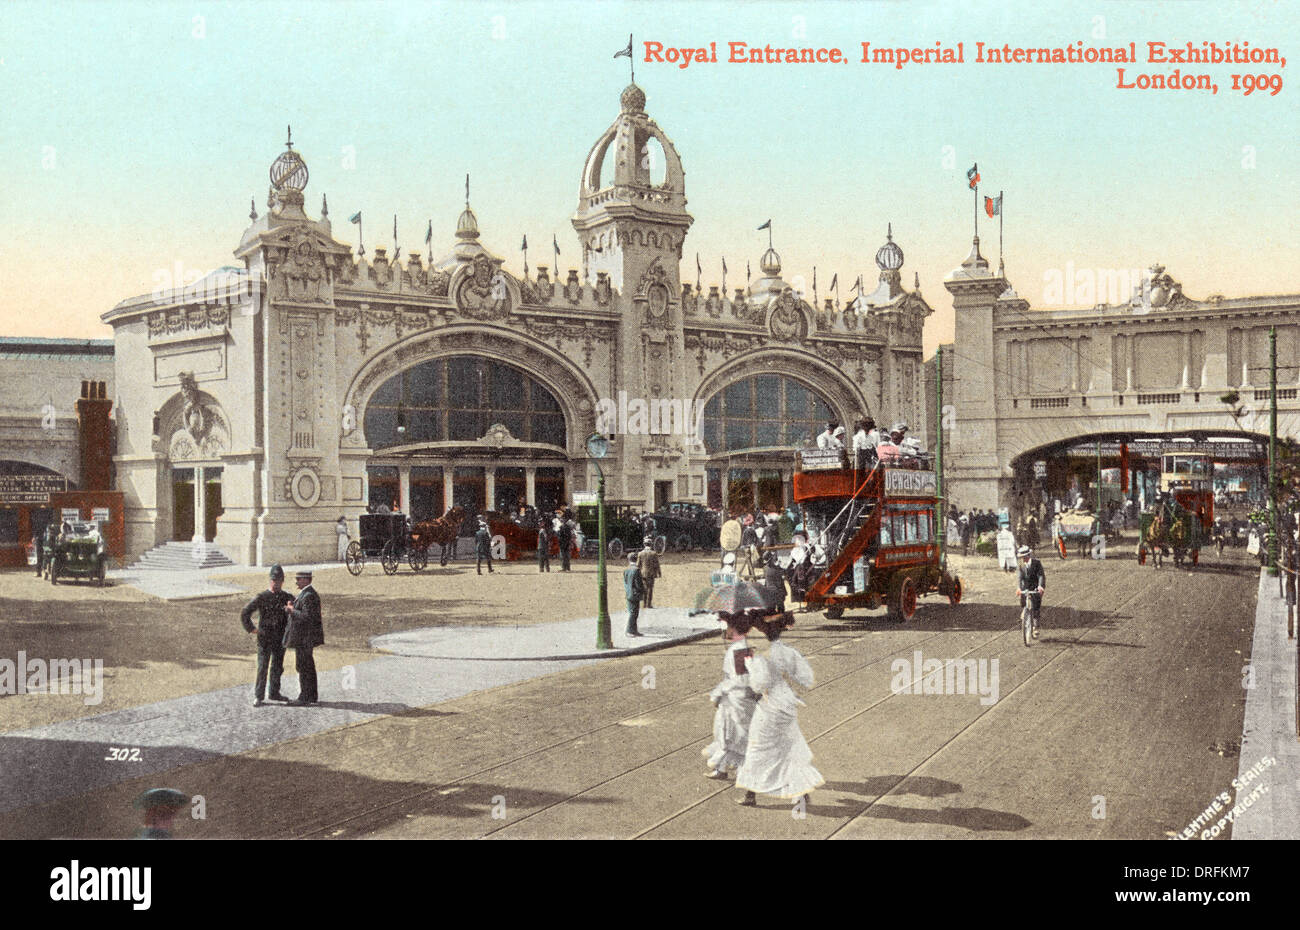 Entrée royale, Imperial International Exhibition, Londres Banque D'Images